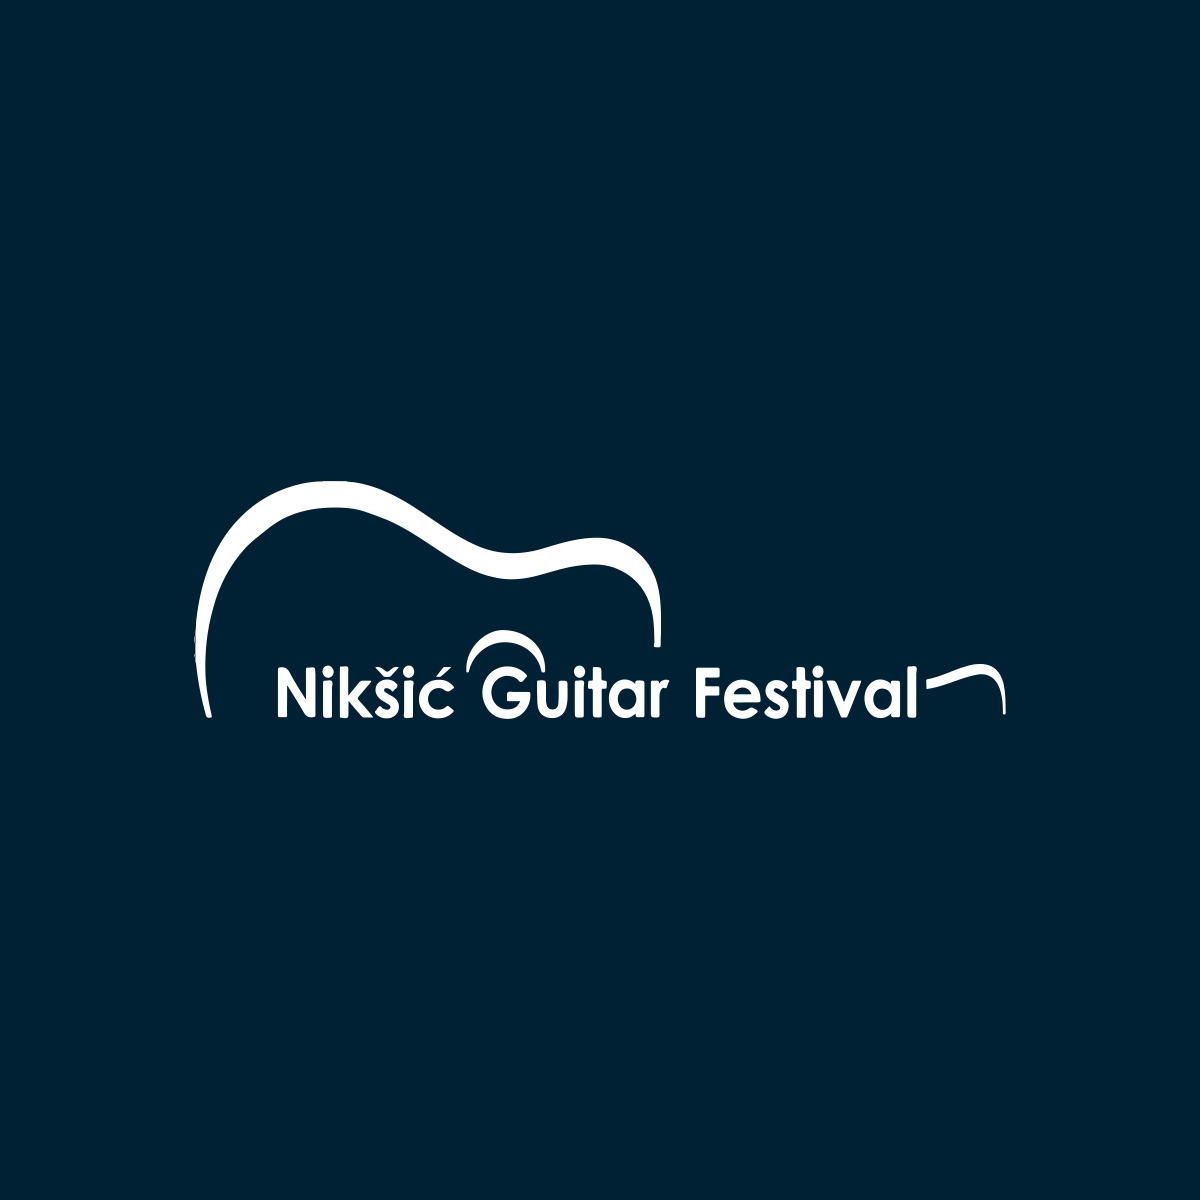 jonas_egholm_concert_2020_september_Niksic-Guitar-Festival